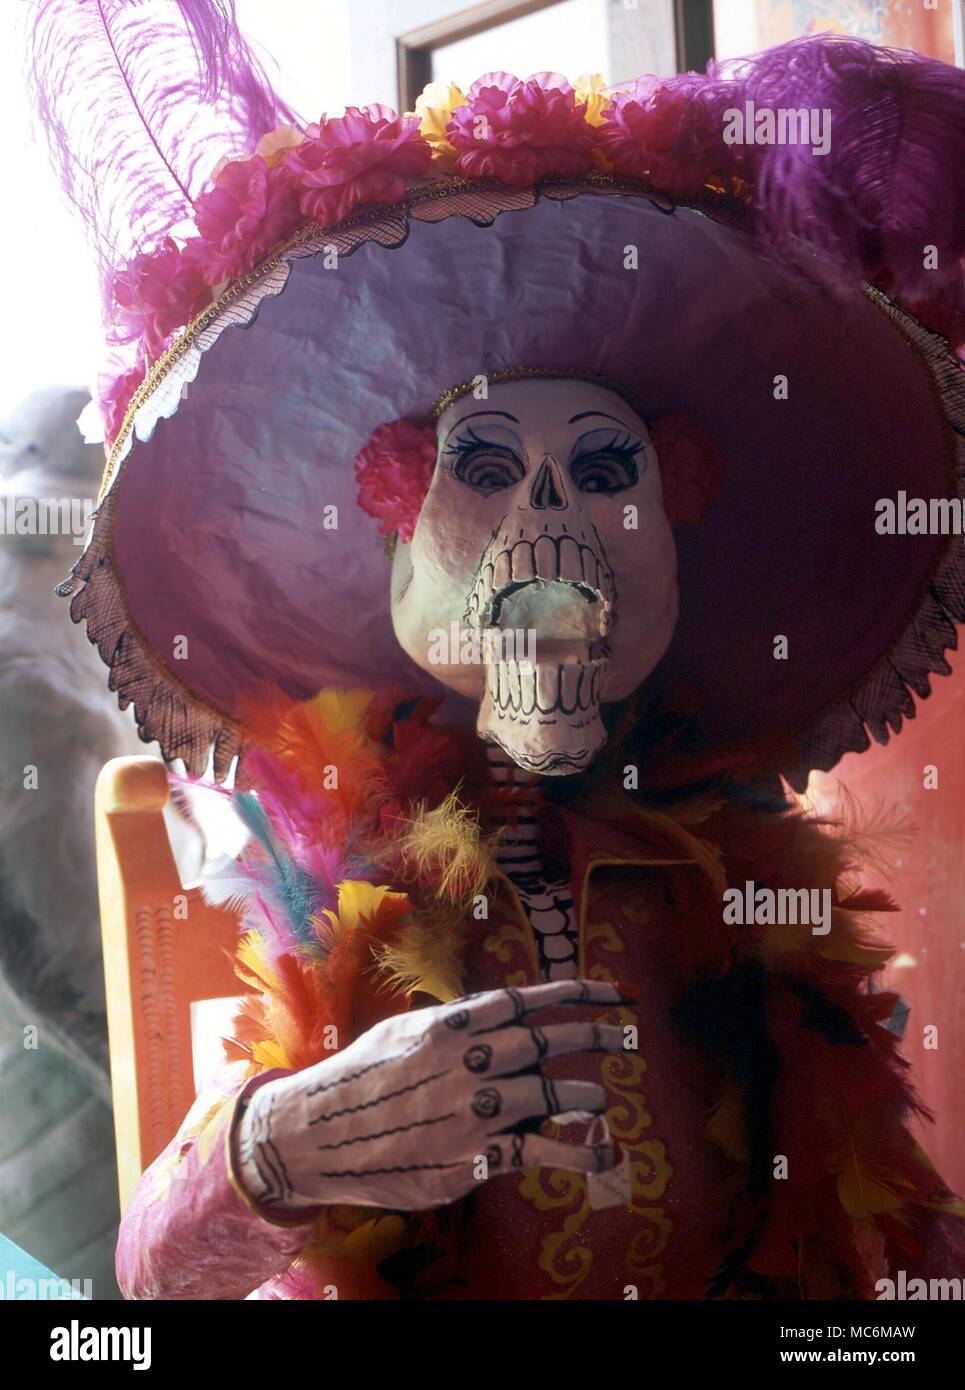 La morte - morte - FESTIVAL DEI MORTI. Il messicano Fiesta de Muertos, a partire dal 1° novembre, comporta una lunga preparazione del grezzo (e anche artistico) immagini di morte in forma di scheletri. Esempi da Oaxaca Foto Stock